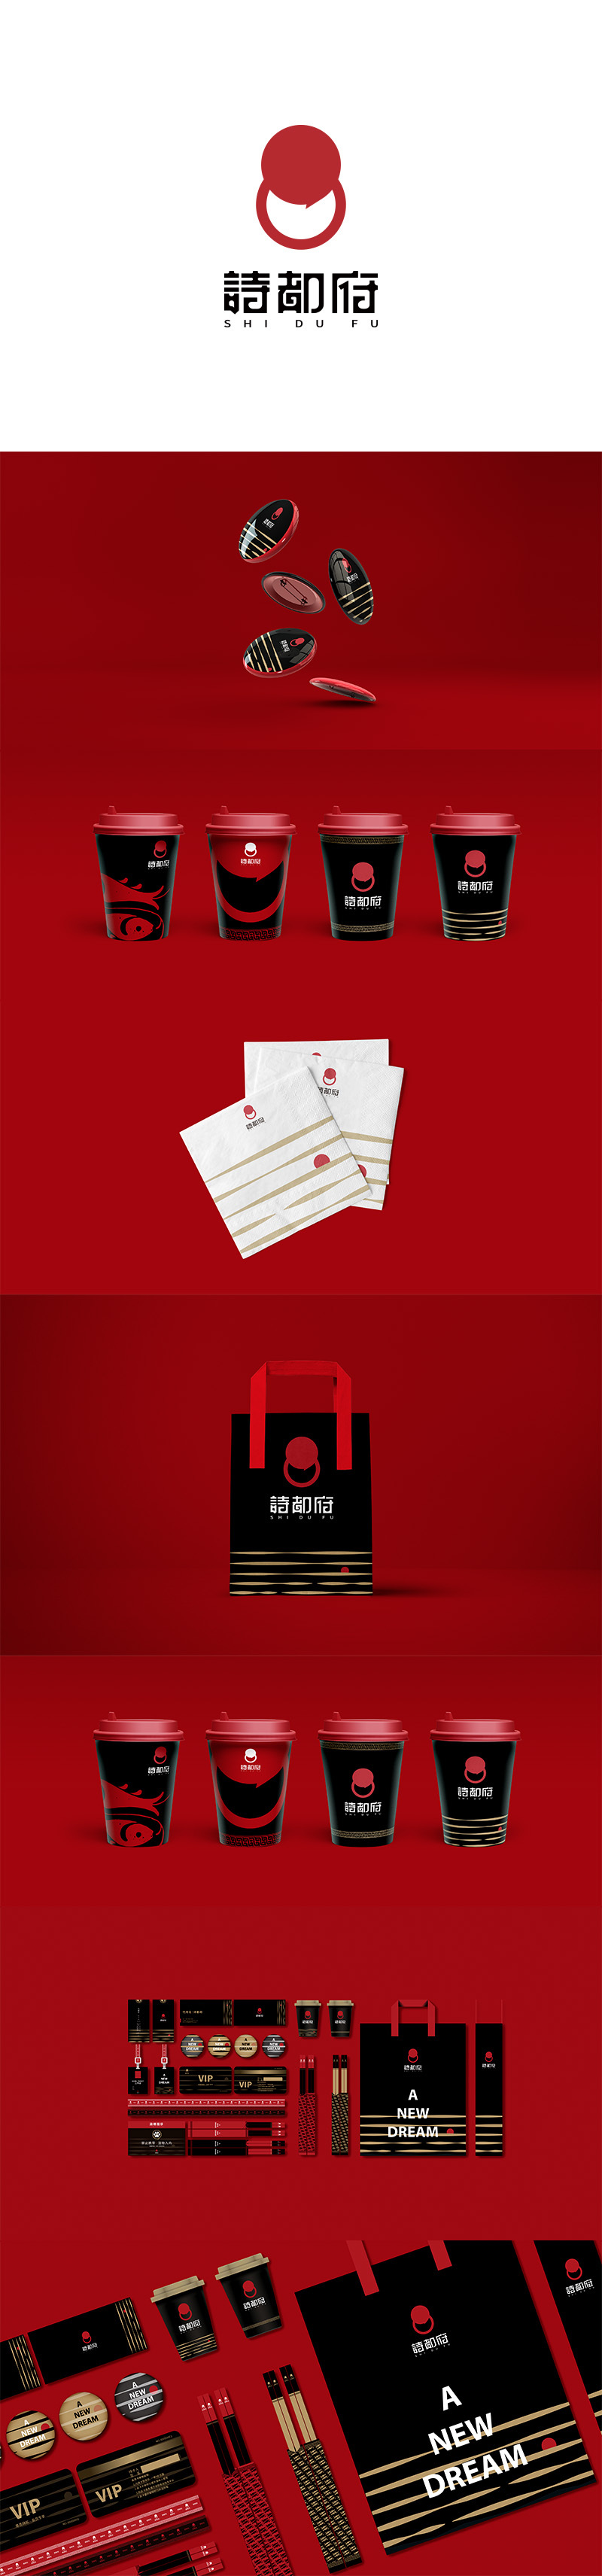 詩都府酒店logo+VI設計圖0